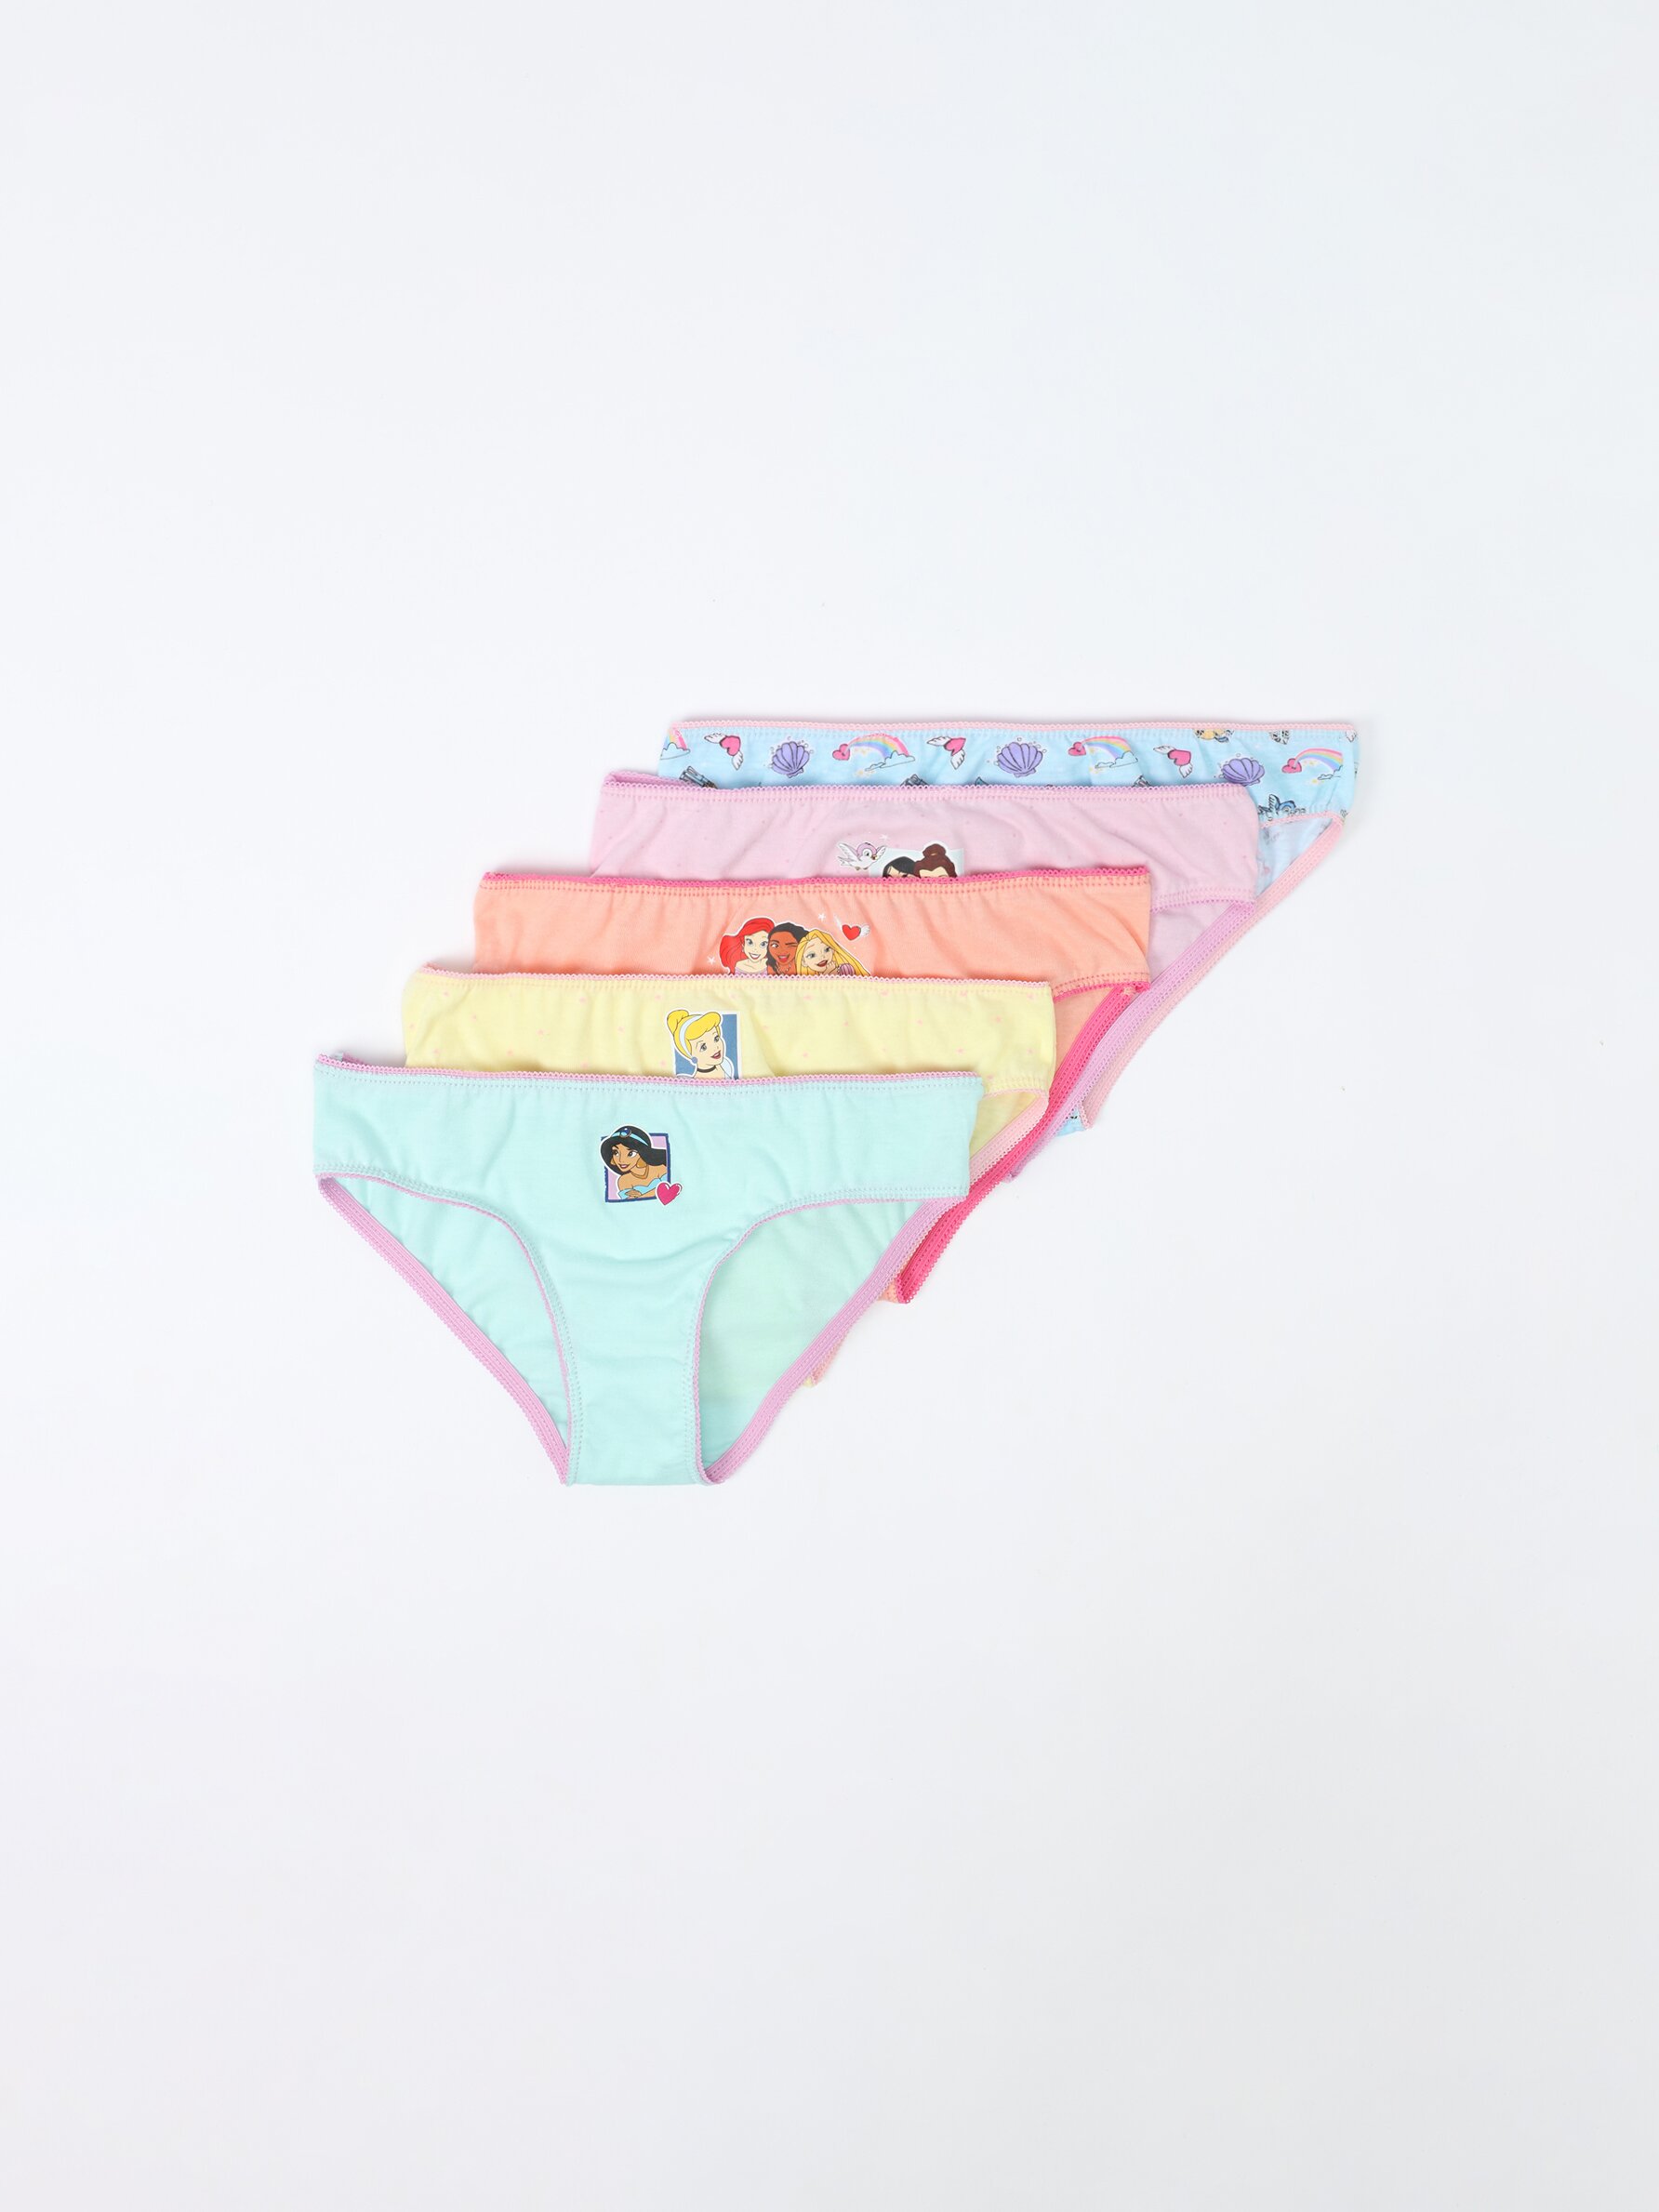 5-pack of ©Disney Princesses briefs - Briefs - Underwear